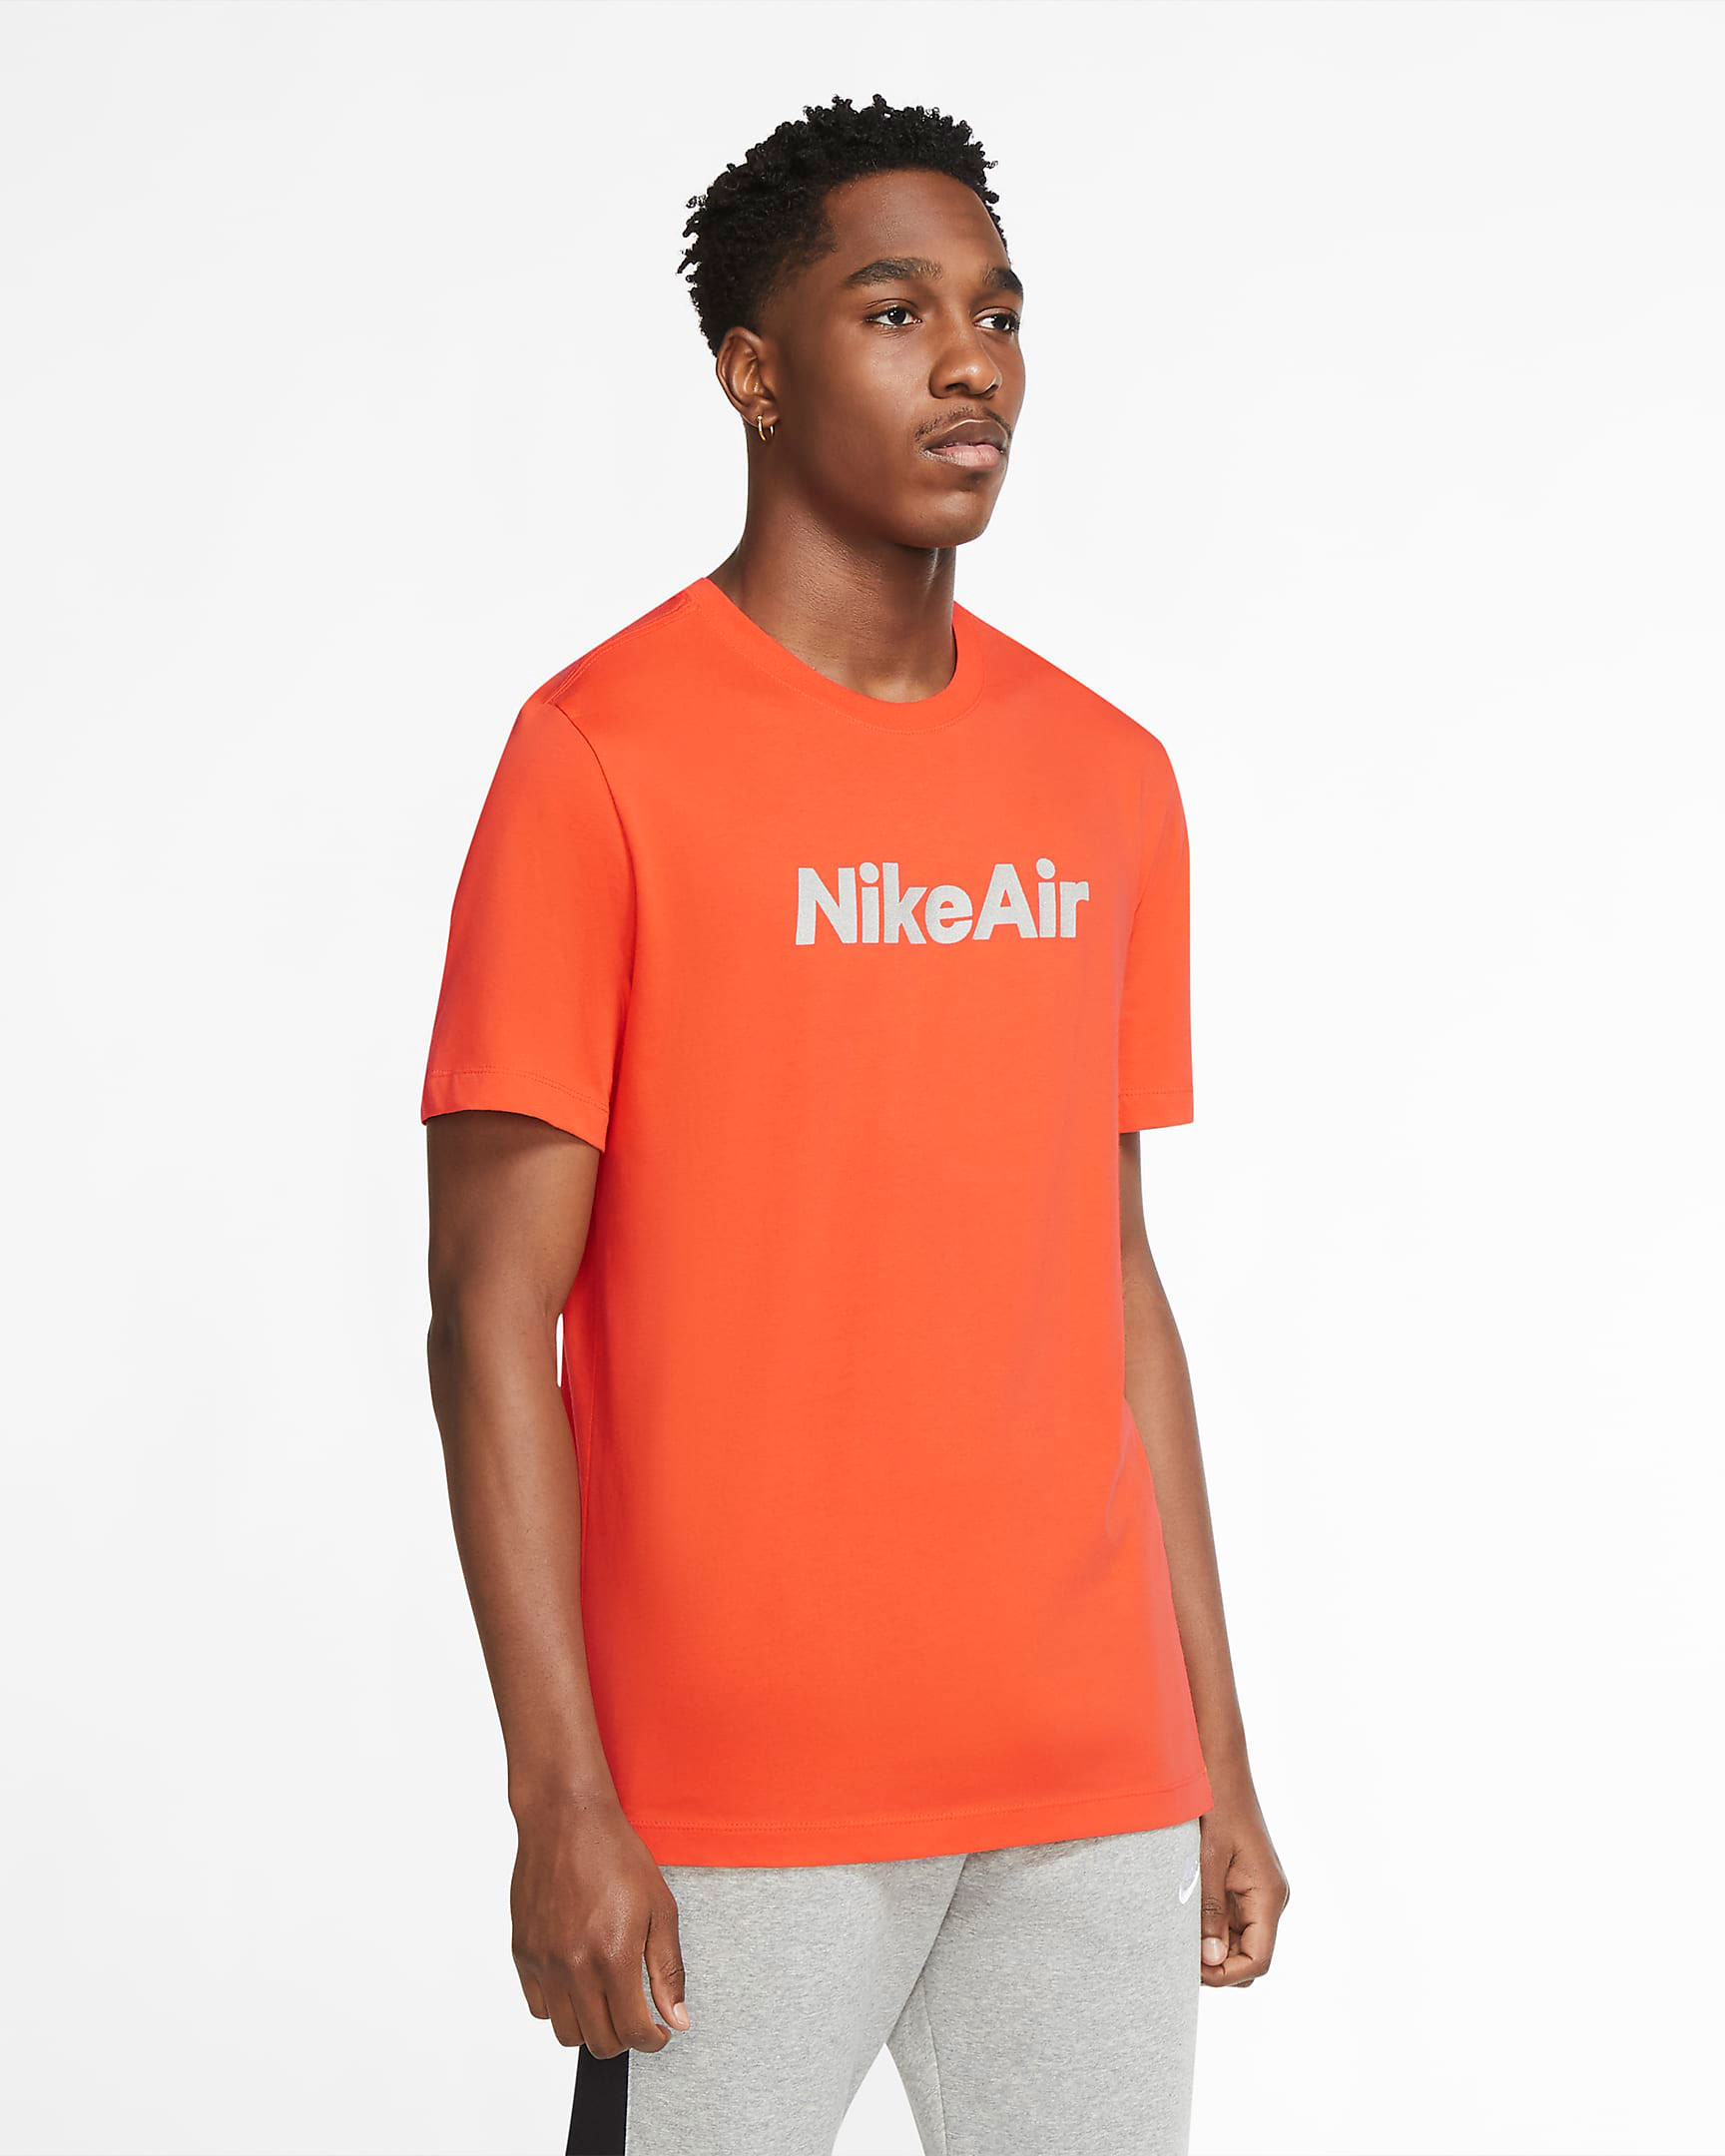 nike-air-shirt-orange